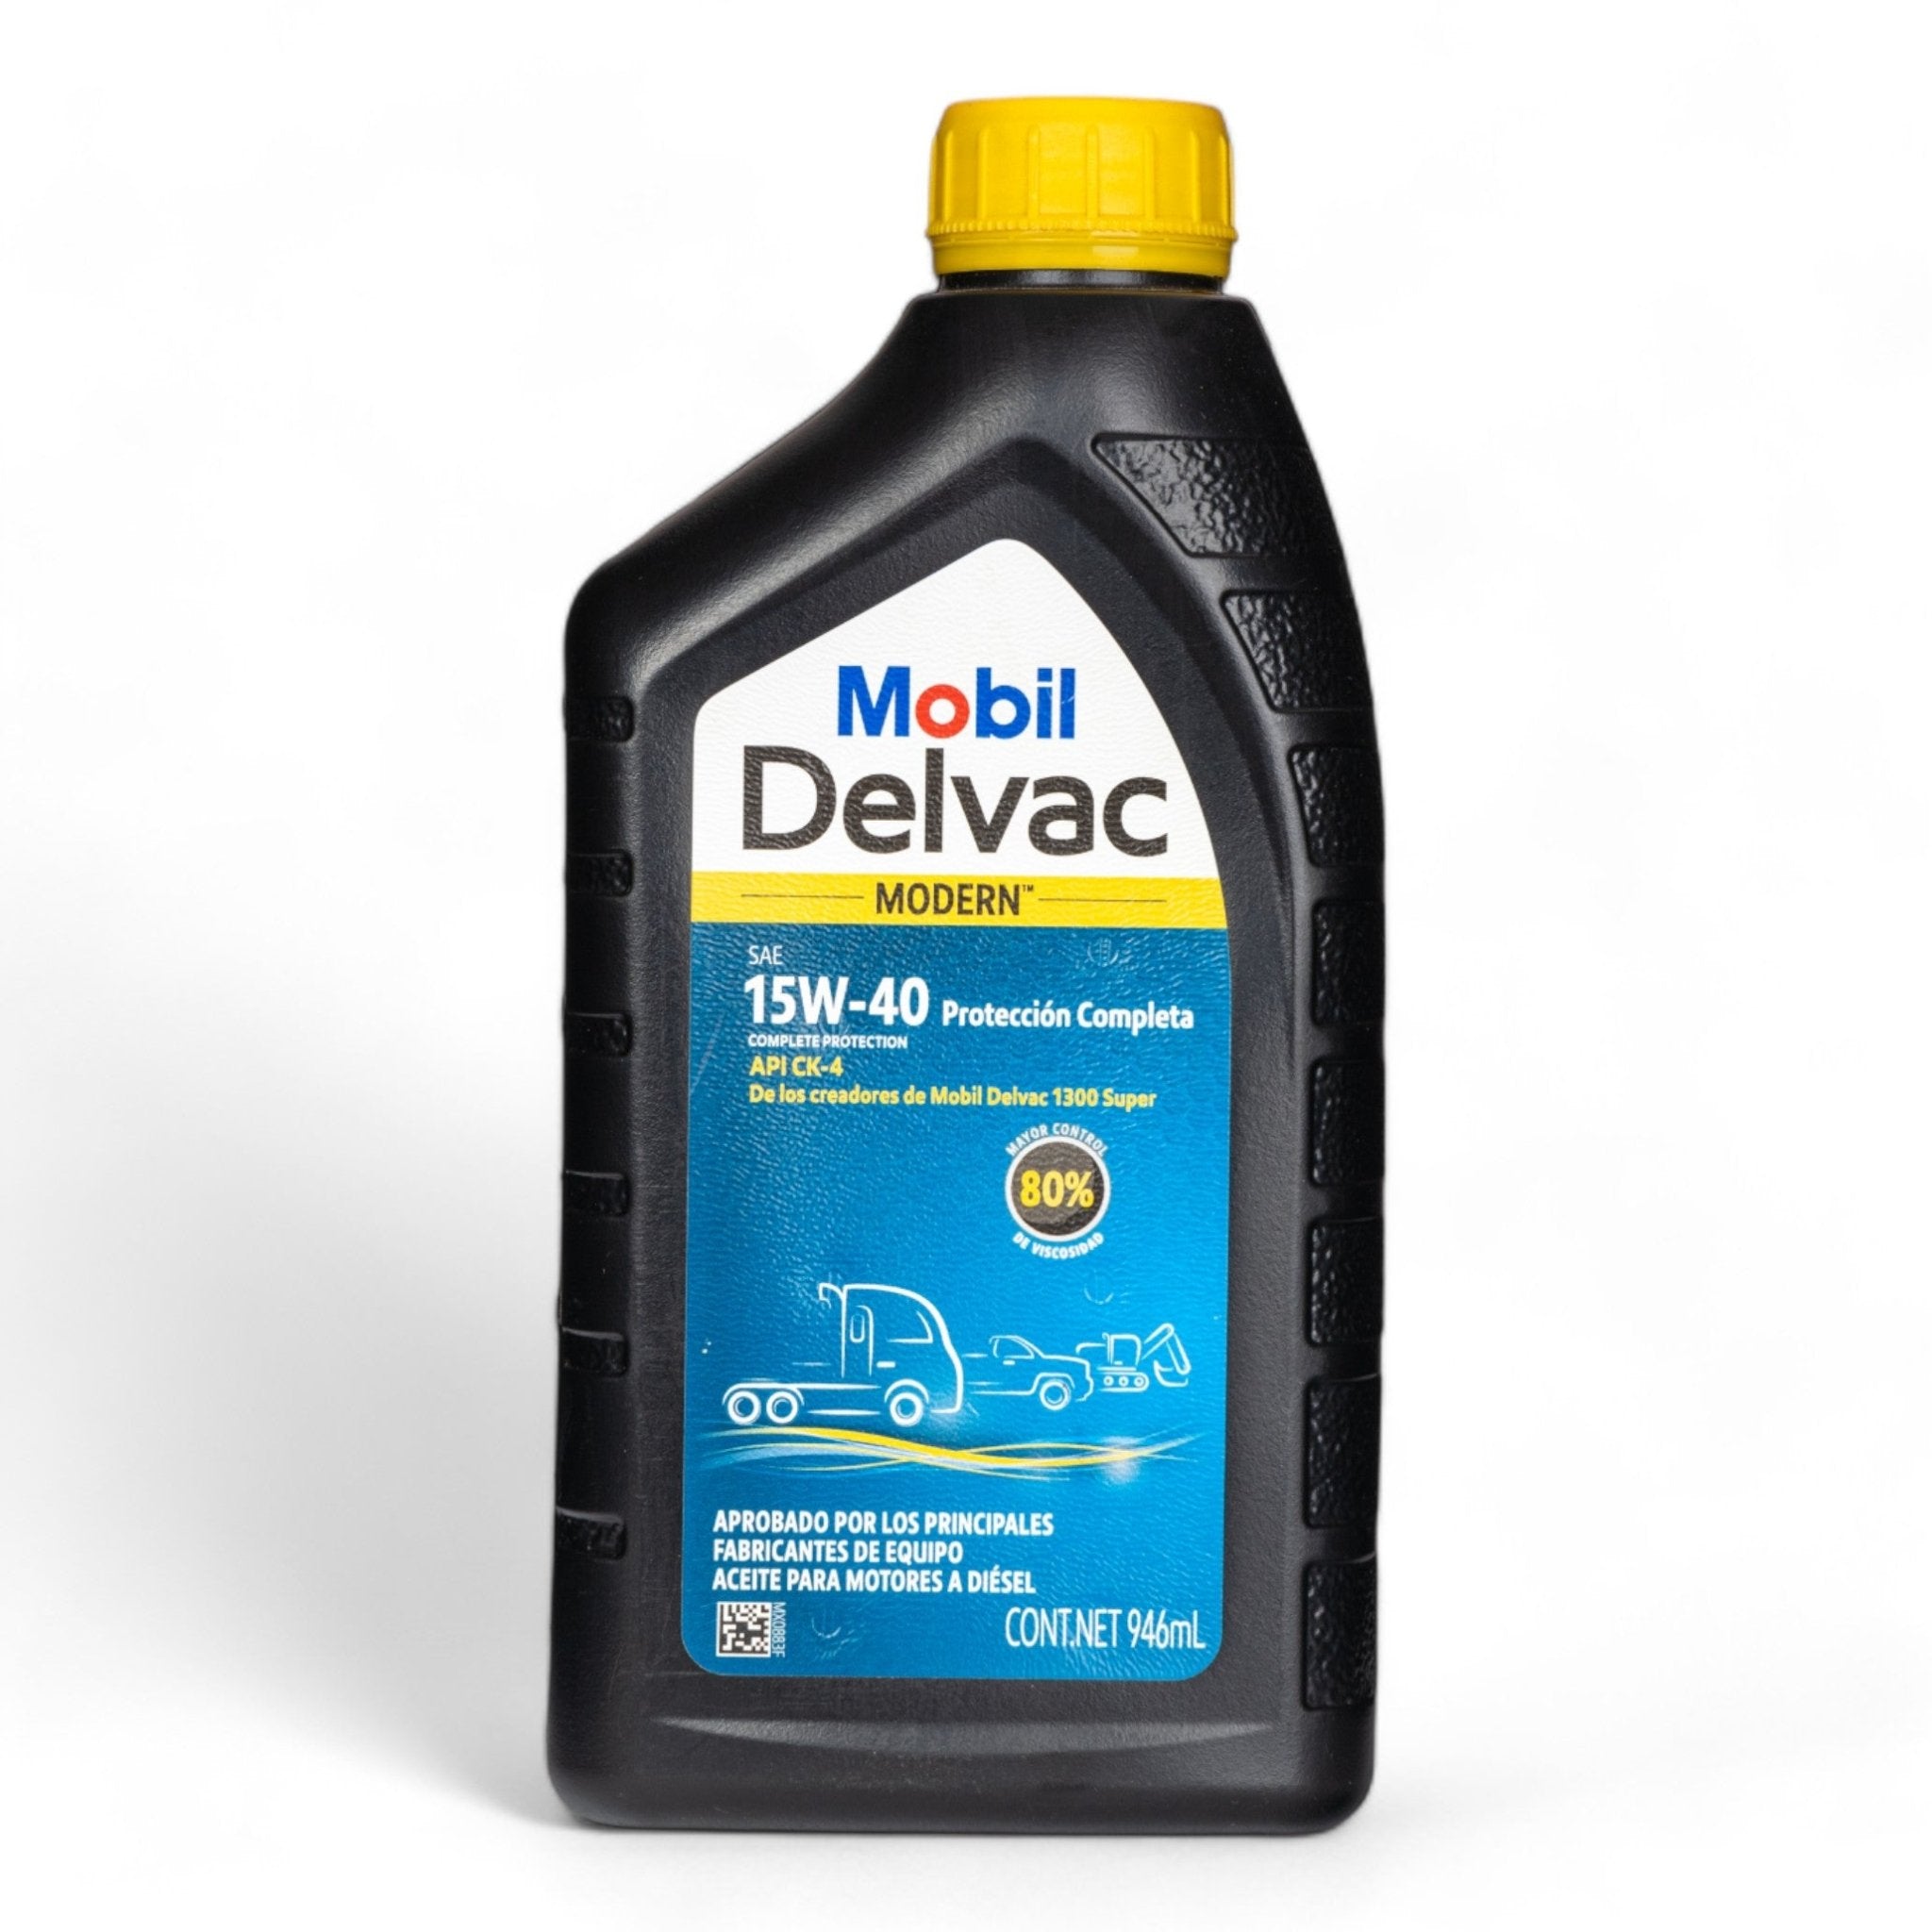 Aceite Mobil Delvac Modern™ 15W-40, Protección Completa, 946ml - FERRETERÍA WITZI